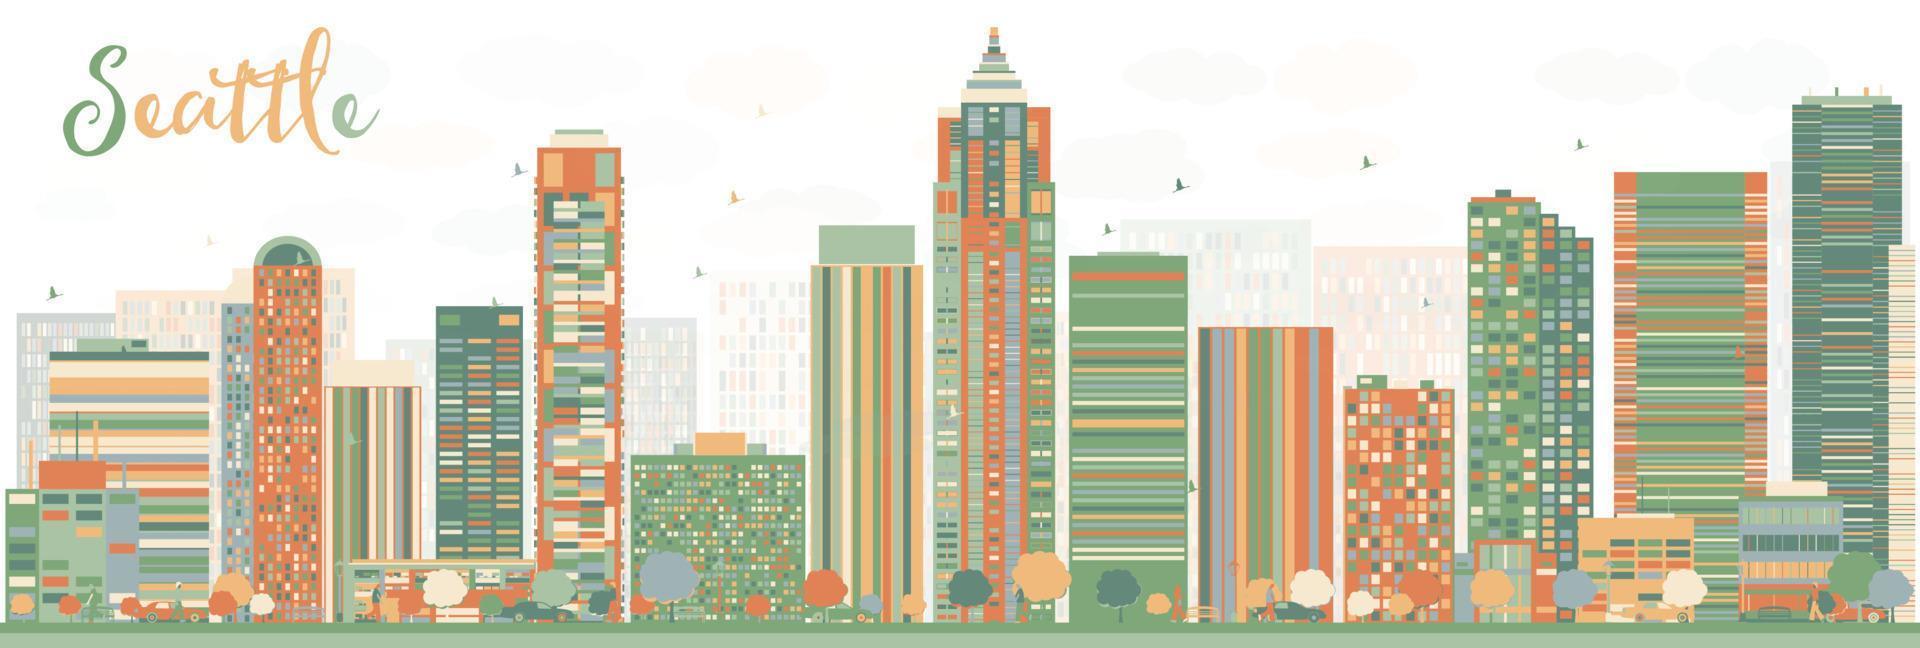 horizon abstrait de la ville de seattle avec des bâtiments de couleur. vecteur